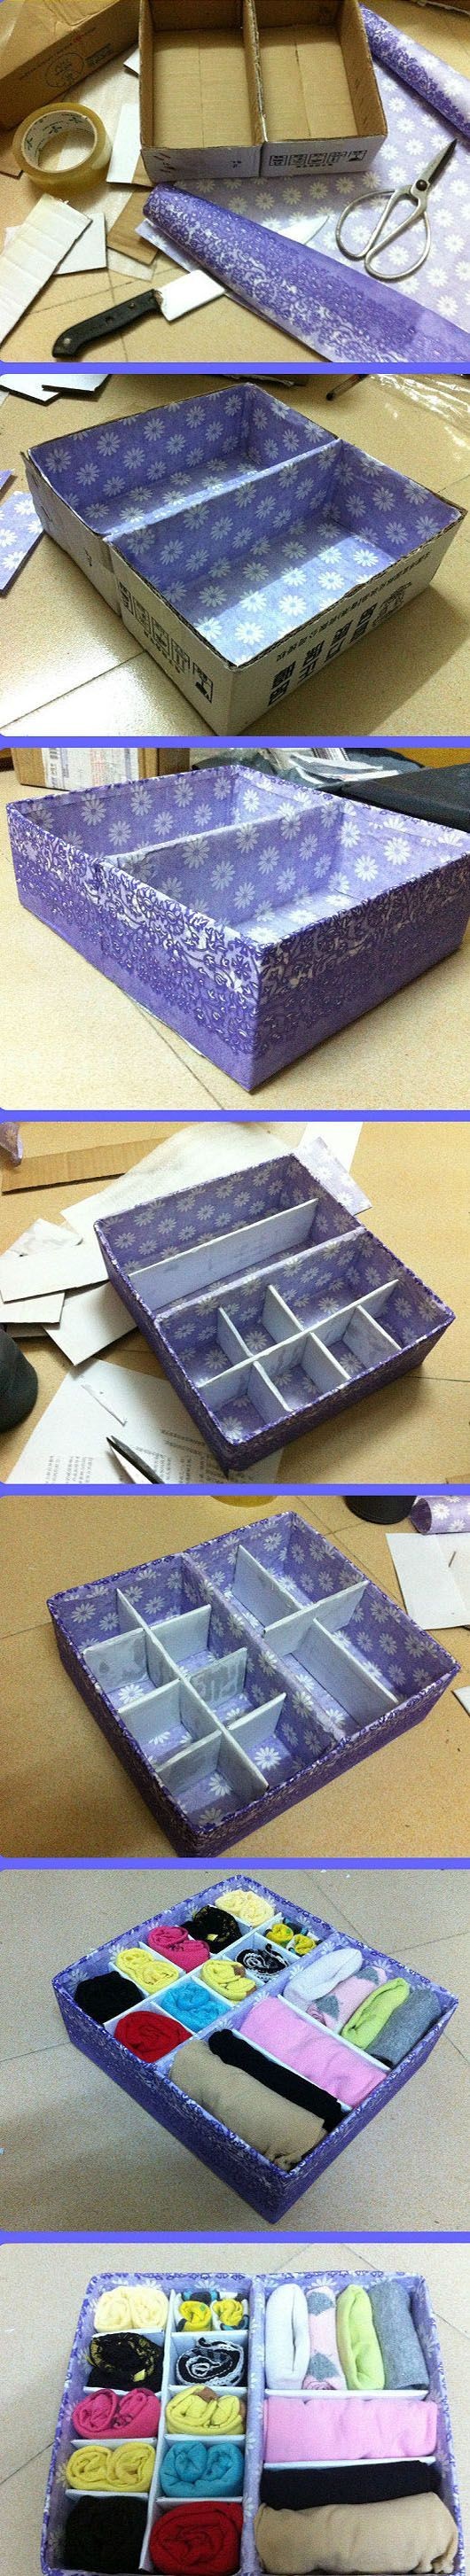 4. Trasformate semplici scatole di cartone in divisori per i cassetti